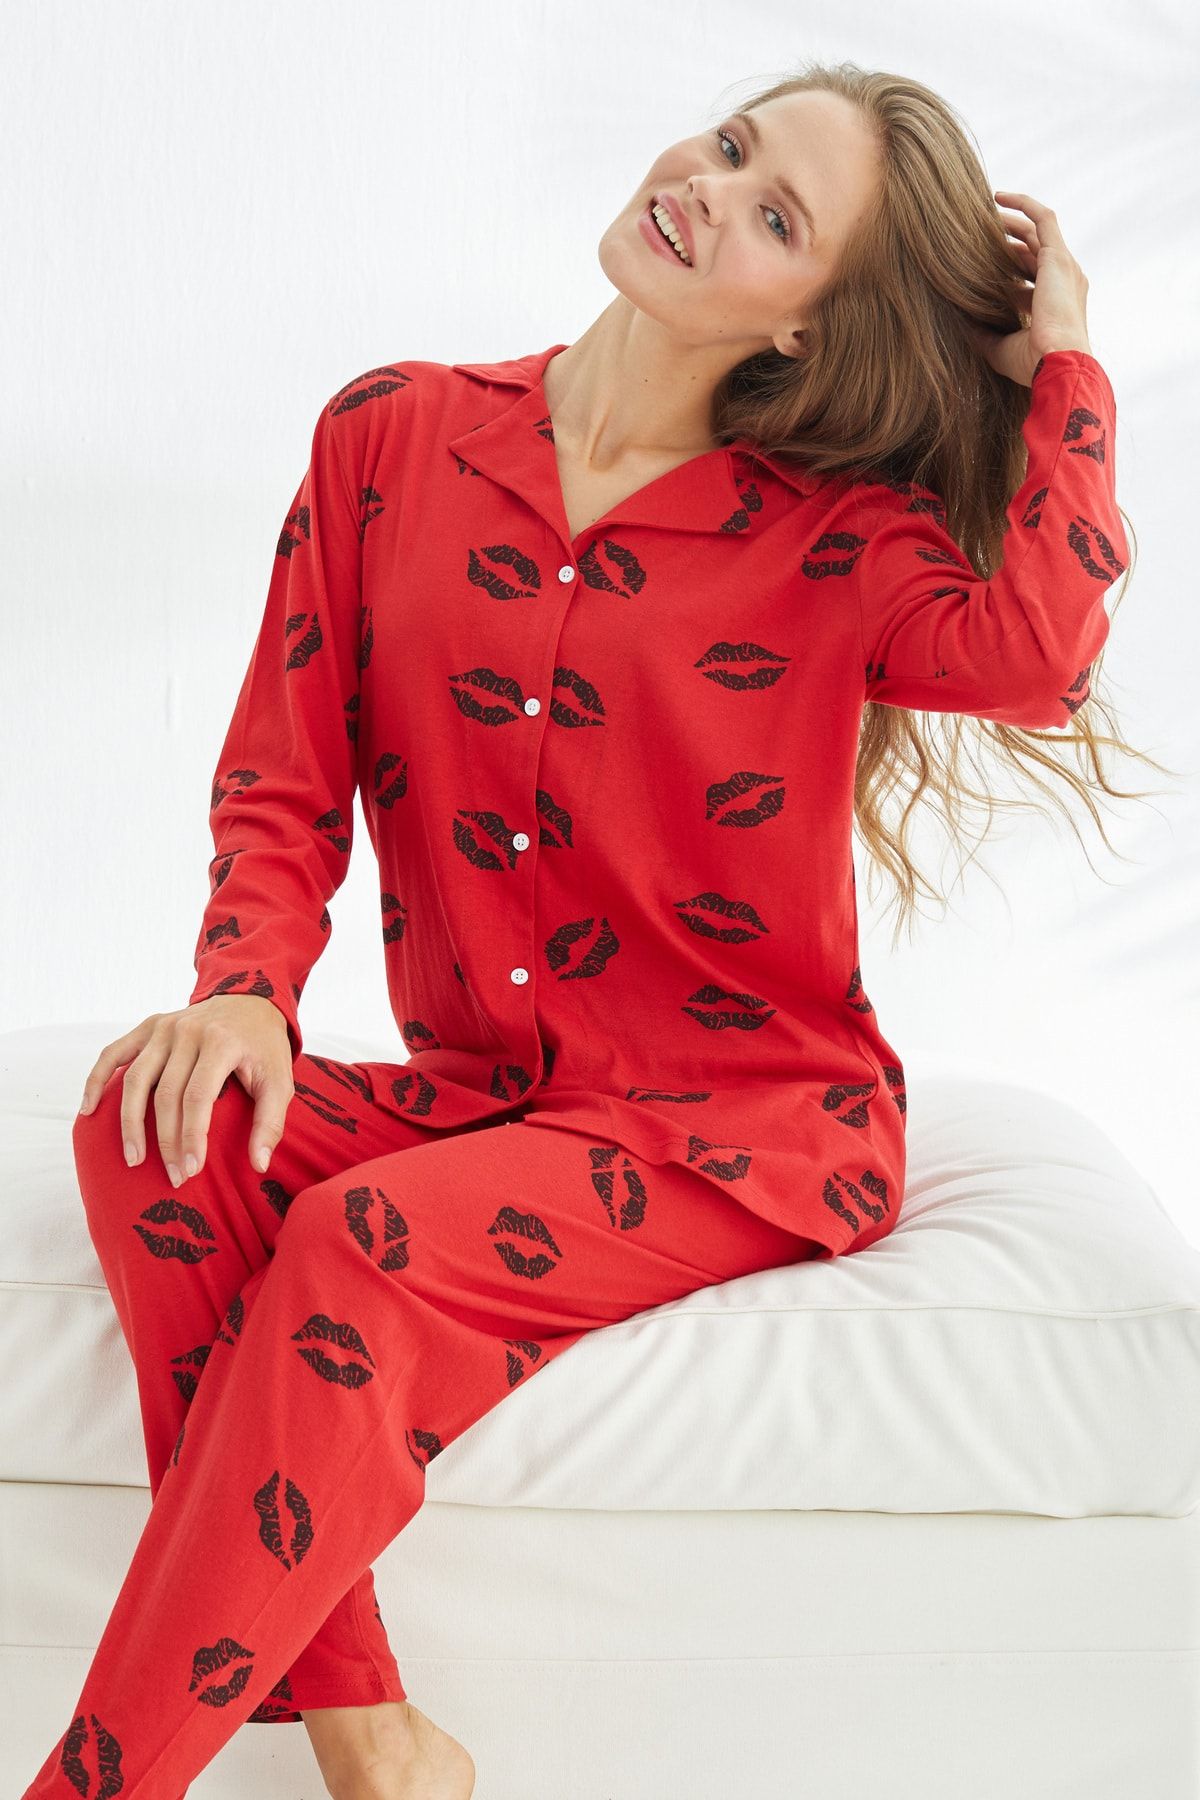 Siyah İnci kırmızı dudak desenli Pamuklu Düğmeli Pijama Takımı